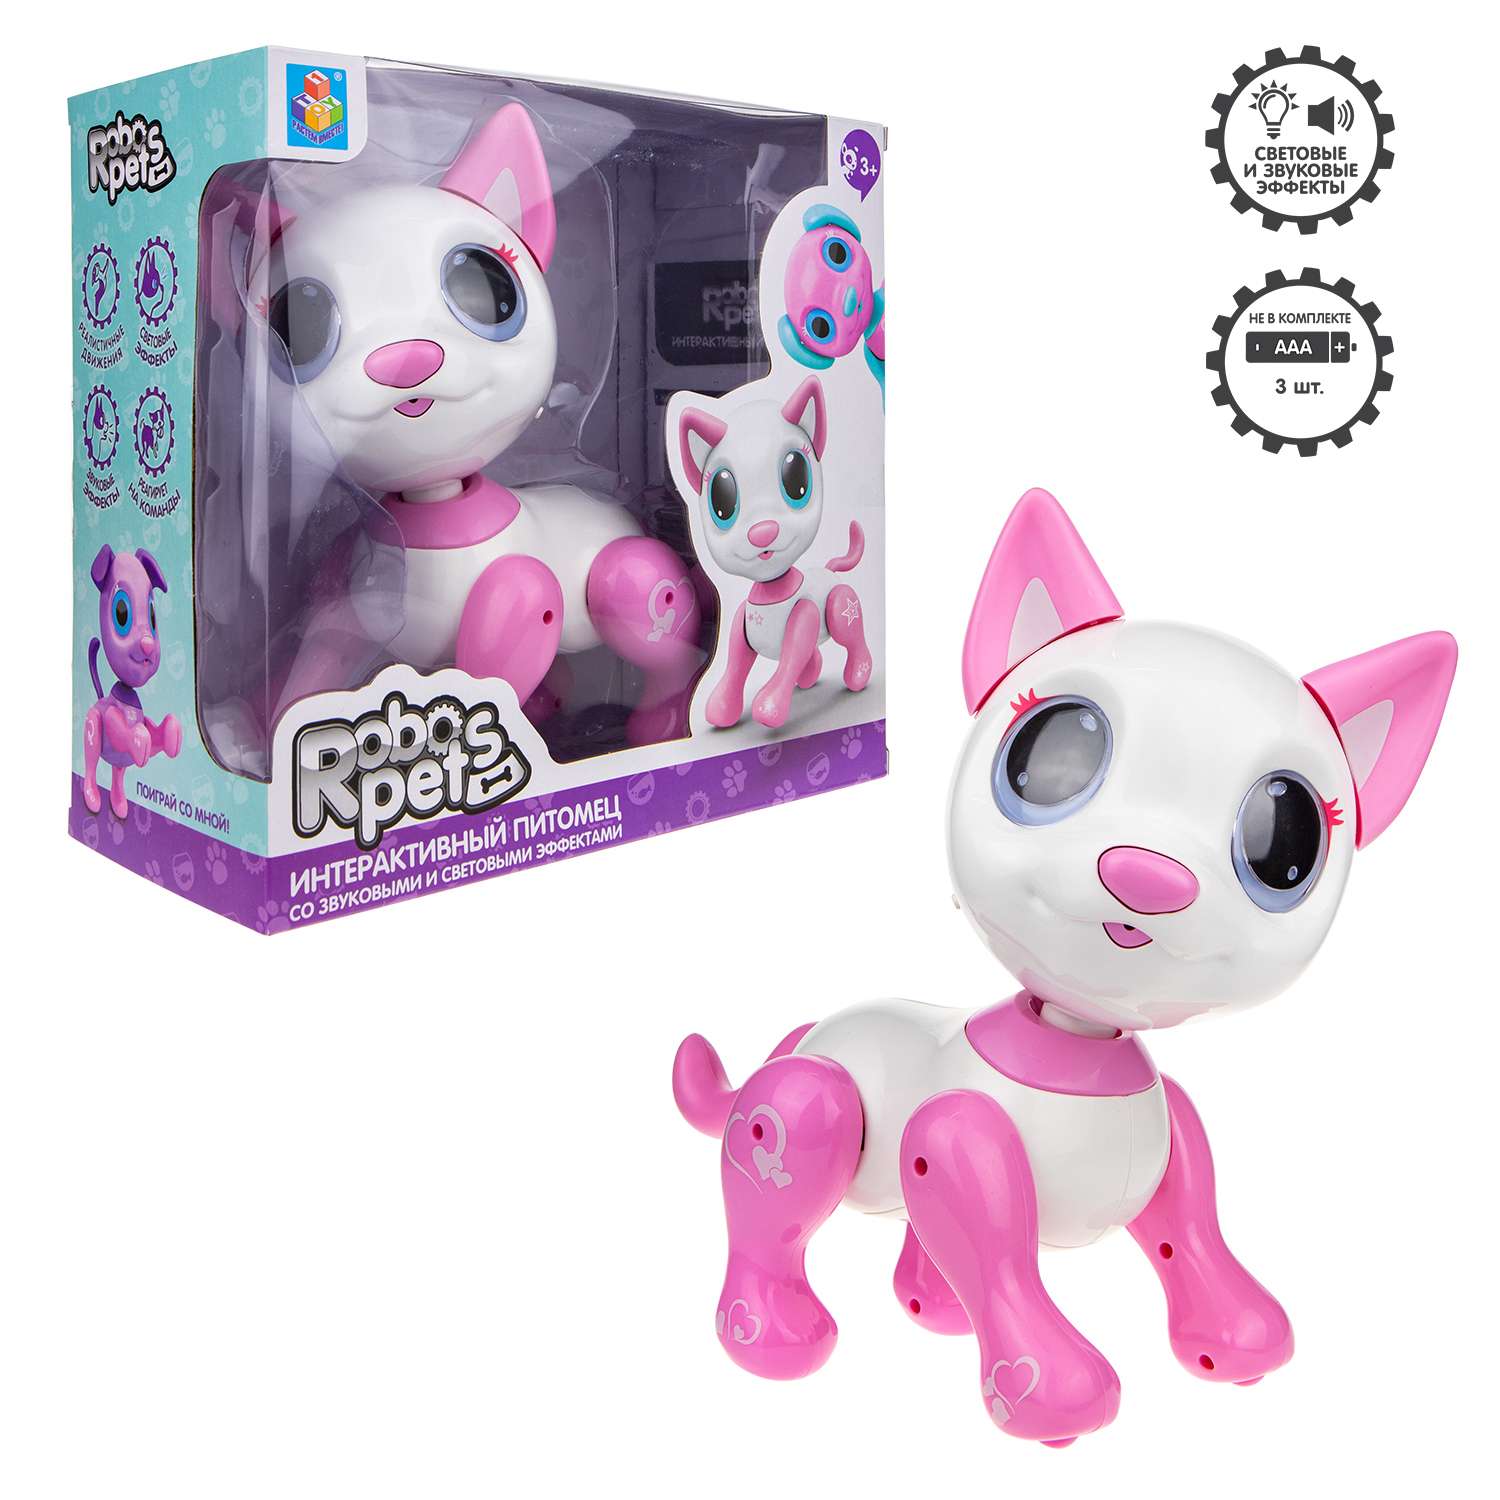 Интерактивная игрушка Robo Pets Робо-котёнок белый/розовый - фото 2